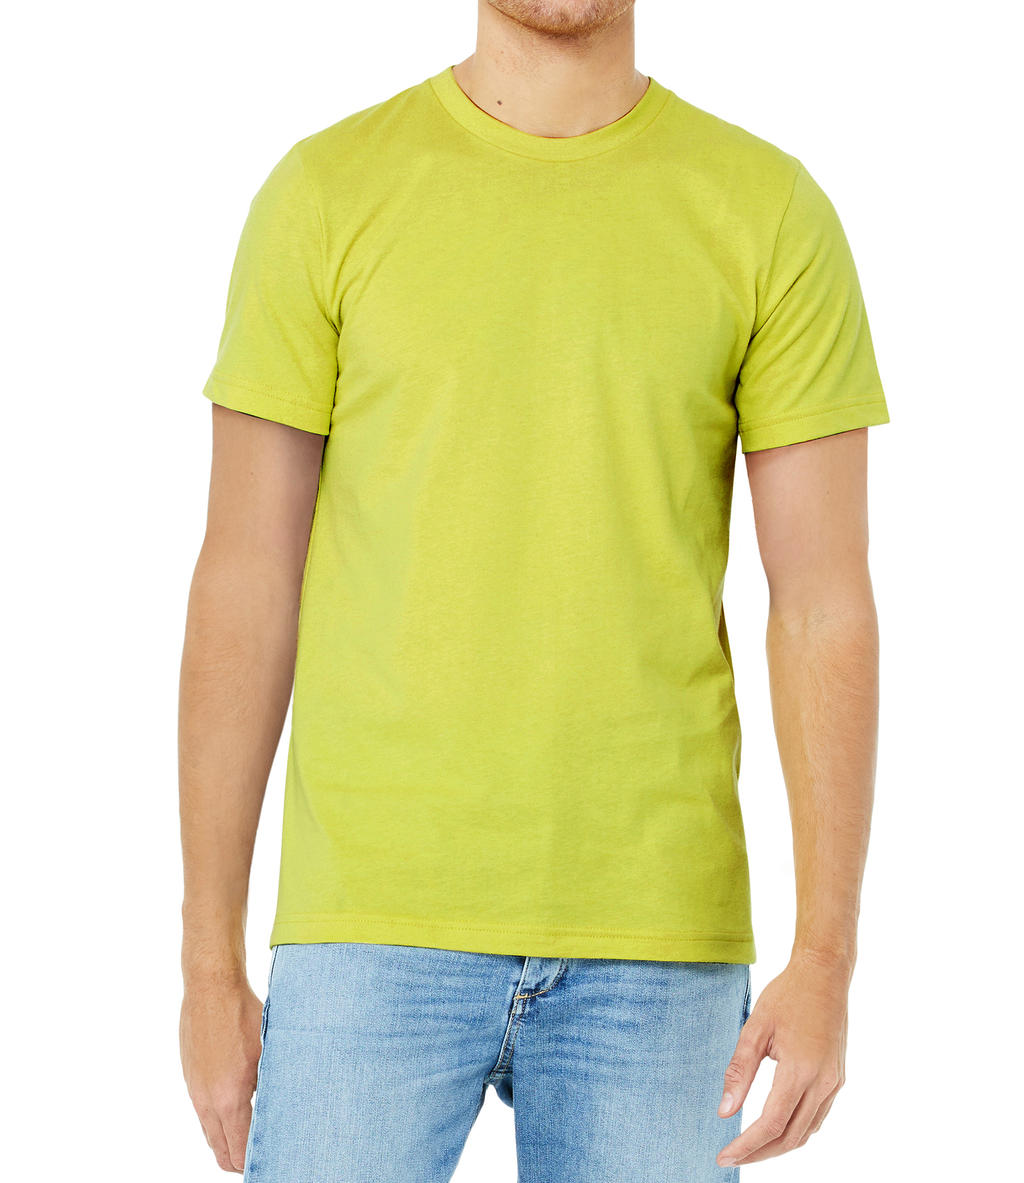 Tričko Bella Jersey - žluté-zelené, L